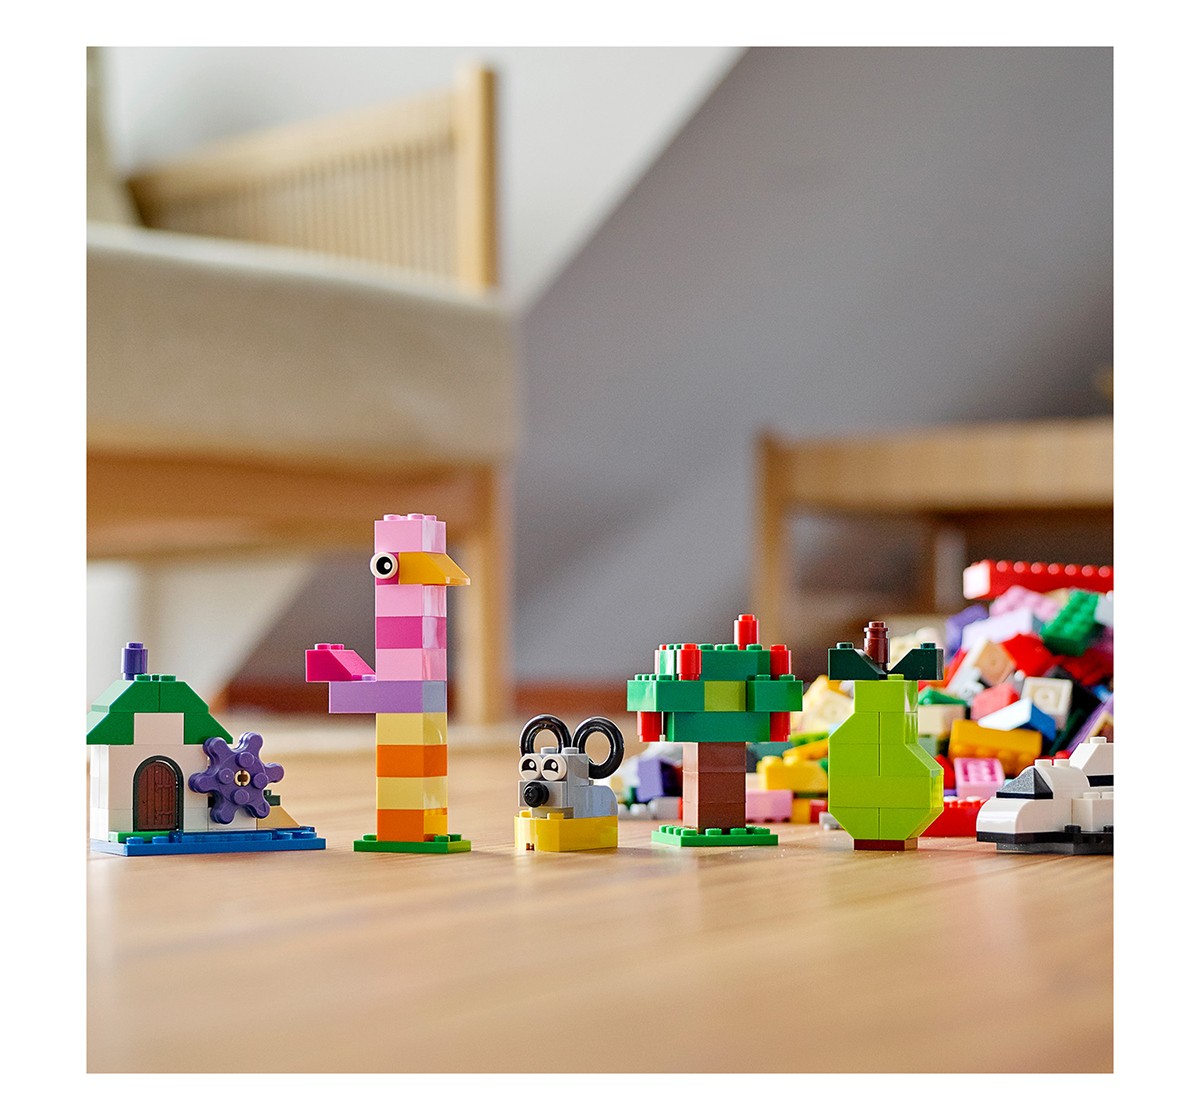 LEGO Creative Building Bricks Lego Blocks for Kids age 4Y+ 